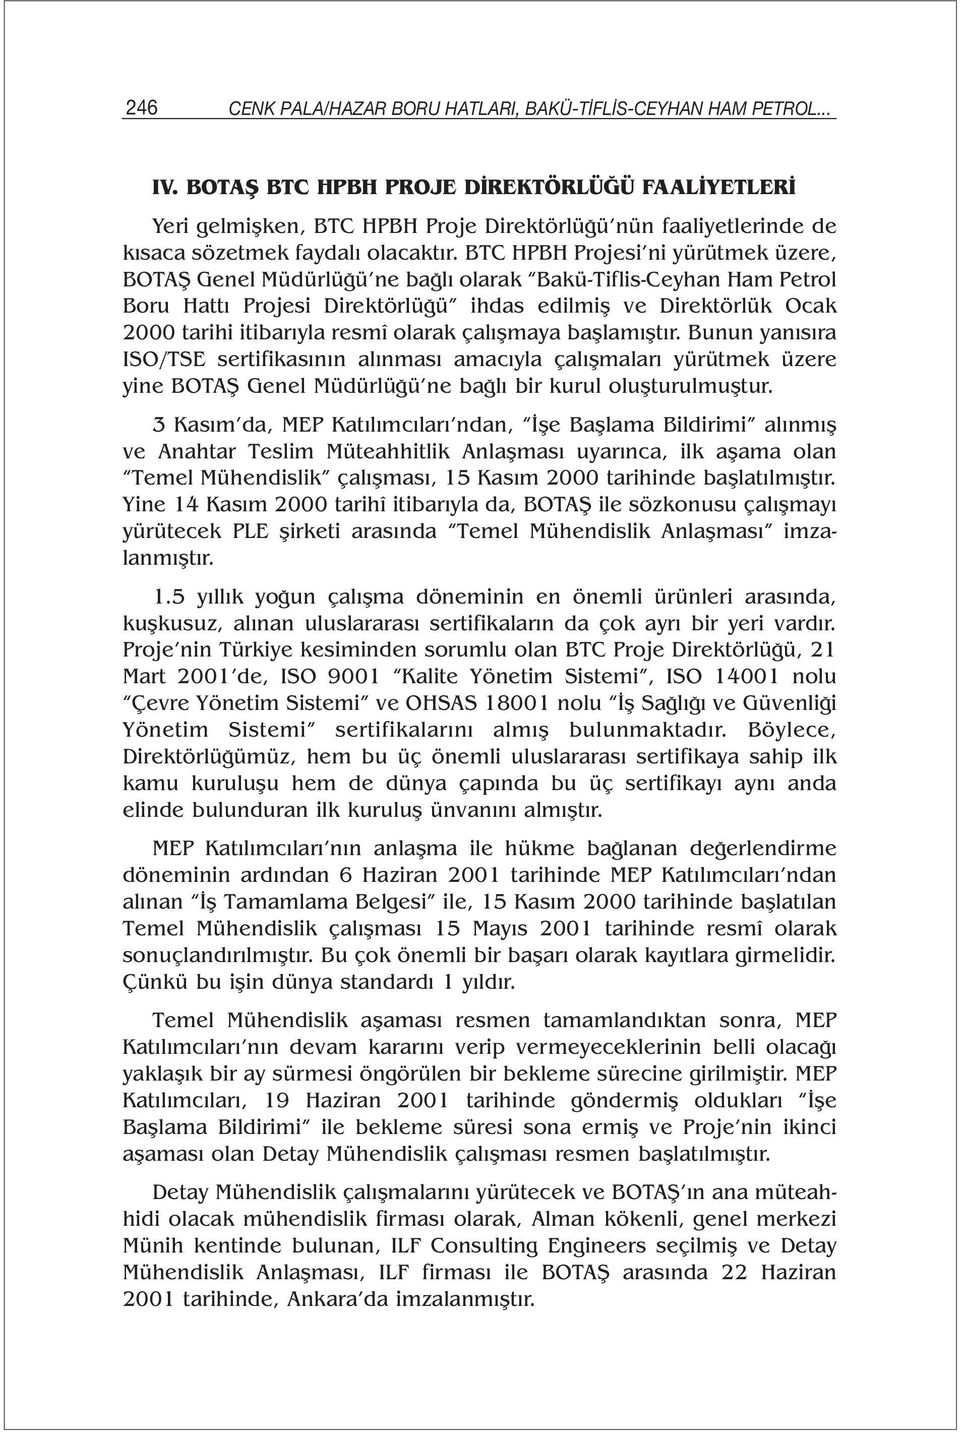 BTC HPBH Projesi ni yürütmek üzere, BOTAŞ Genel Müdürlüğü ne bağlı olarak Bakü-Tiflis-Ceyhan Ham Petrol Boru Hattı Projesi Direktörlüğü ihdas edilmiş ve Direktörlük Ocak 2000 tarihi itibarıyla resmî